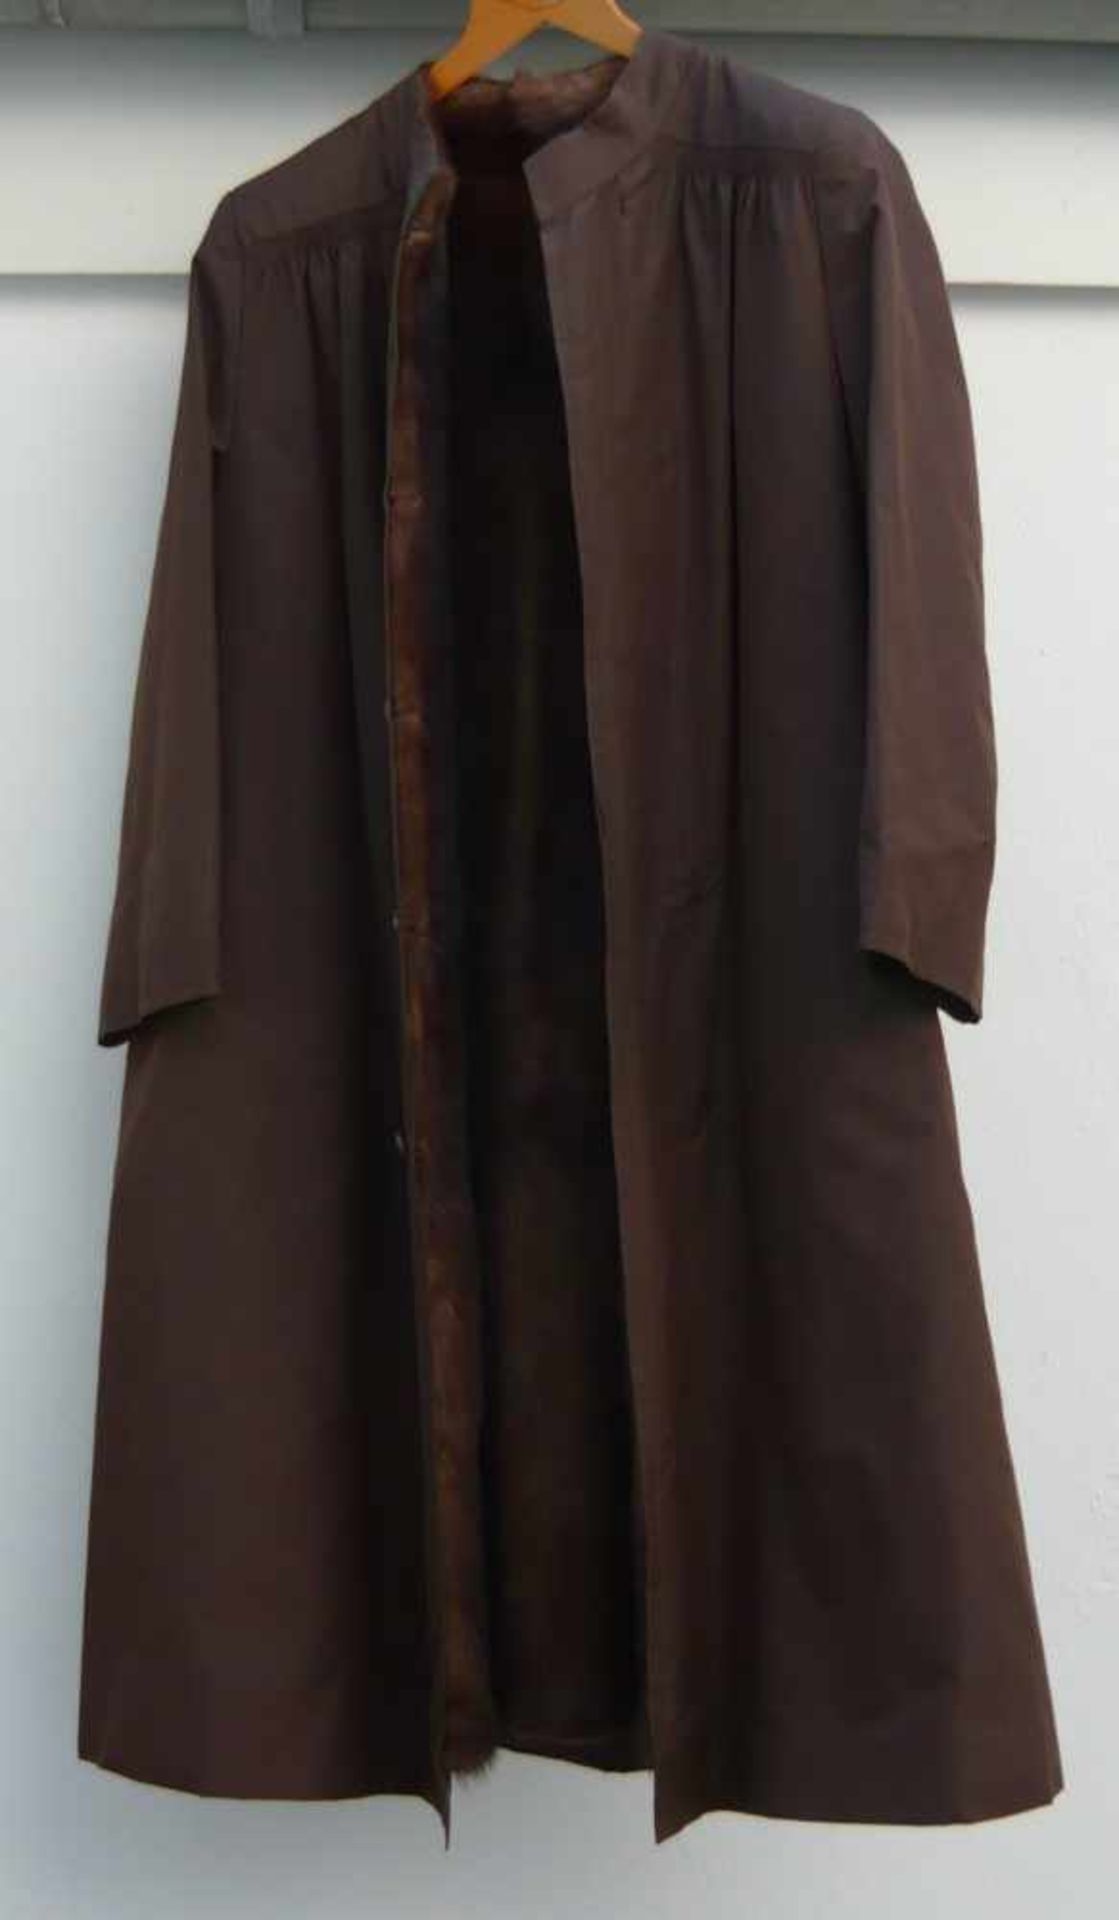 Langer brauner Mantel mit Nerz-Futter Innen. Top modisch und nahezu ungetragen.Long brown coat w.